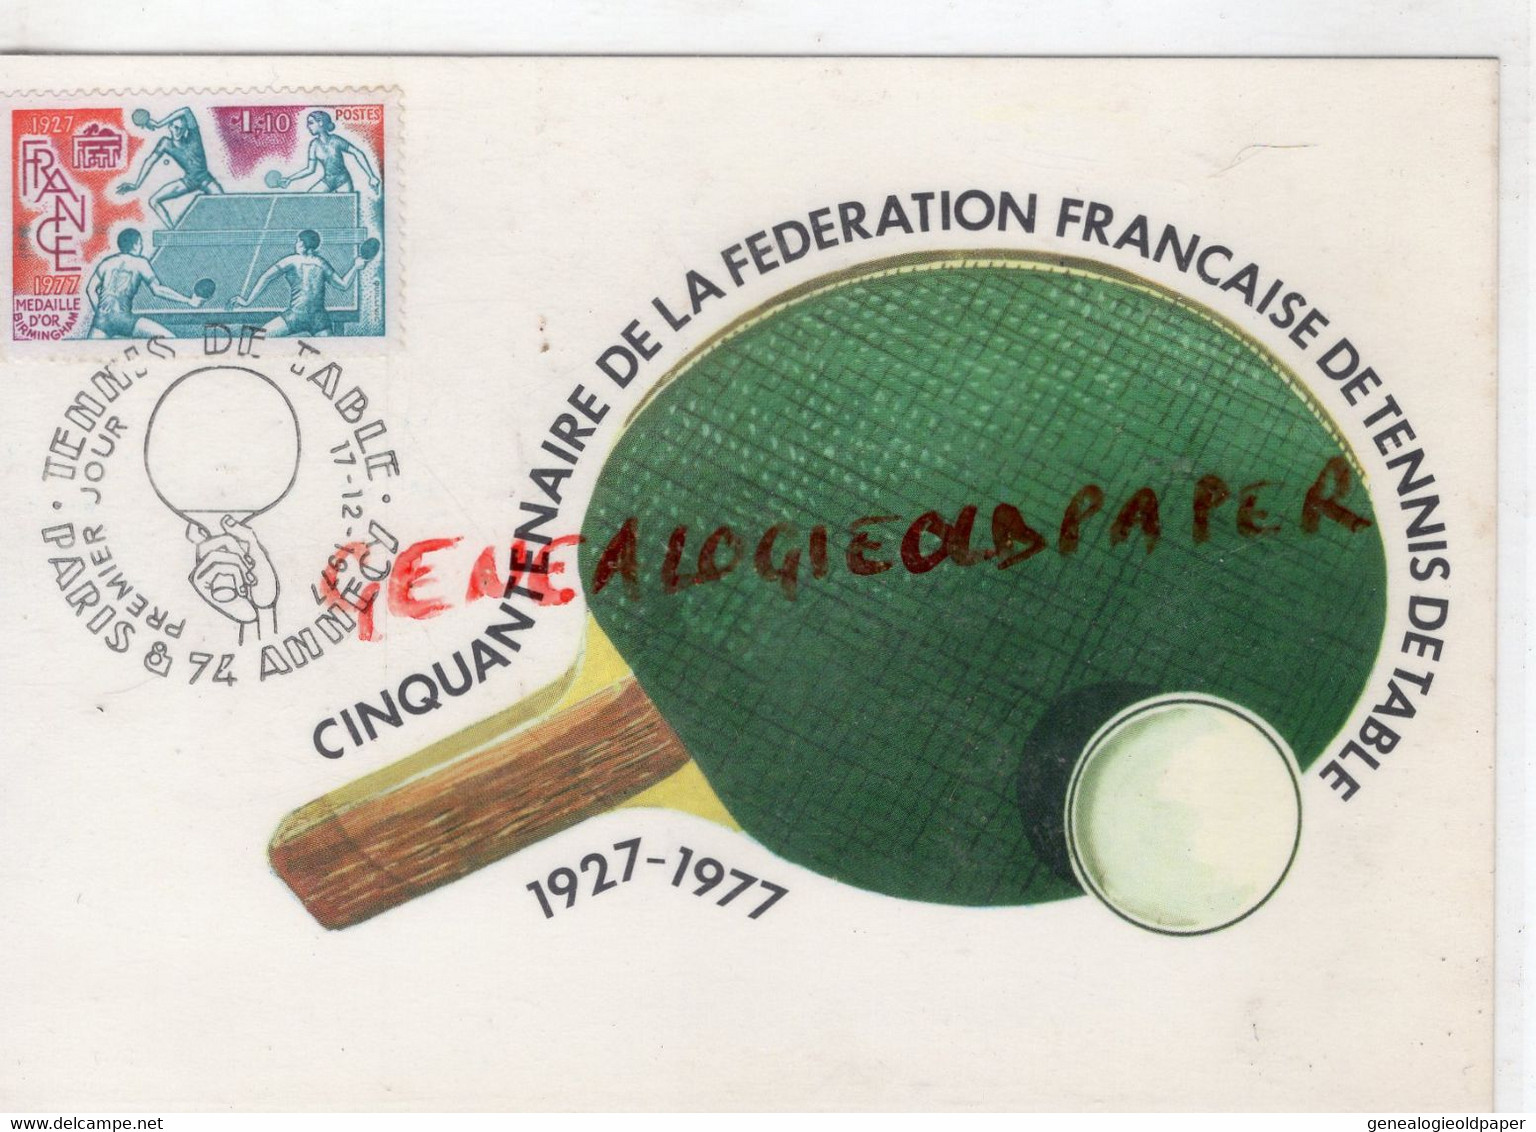 SPORTS CINQUANTENAIRE FEDERATION FRANCAISE TENNIS DE TABLE- PARIS ANNECY 1927-1977 RAQUETTE - Table Tennis